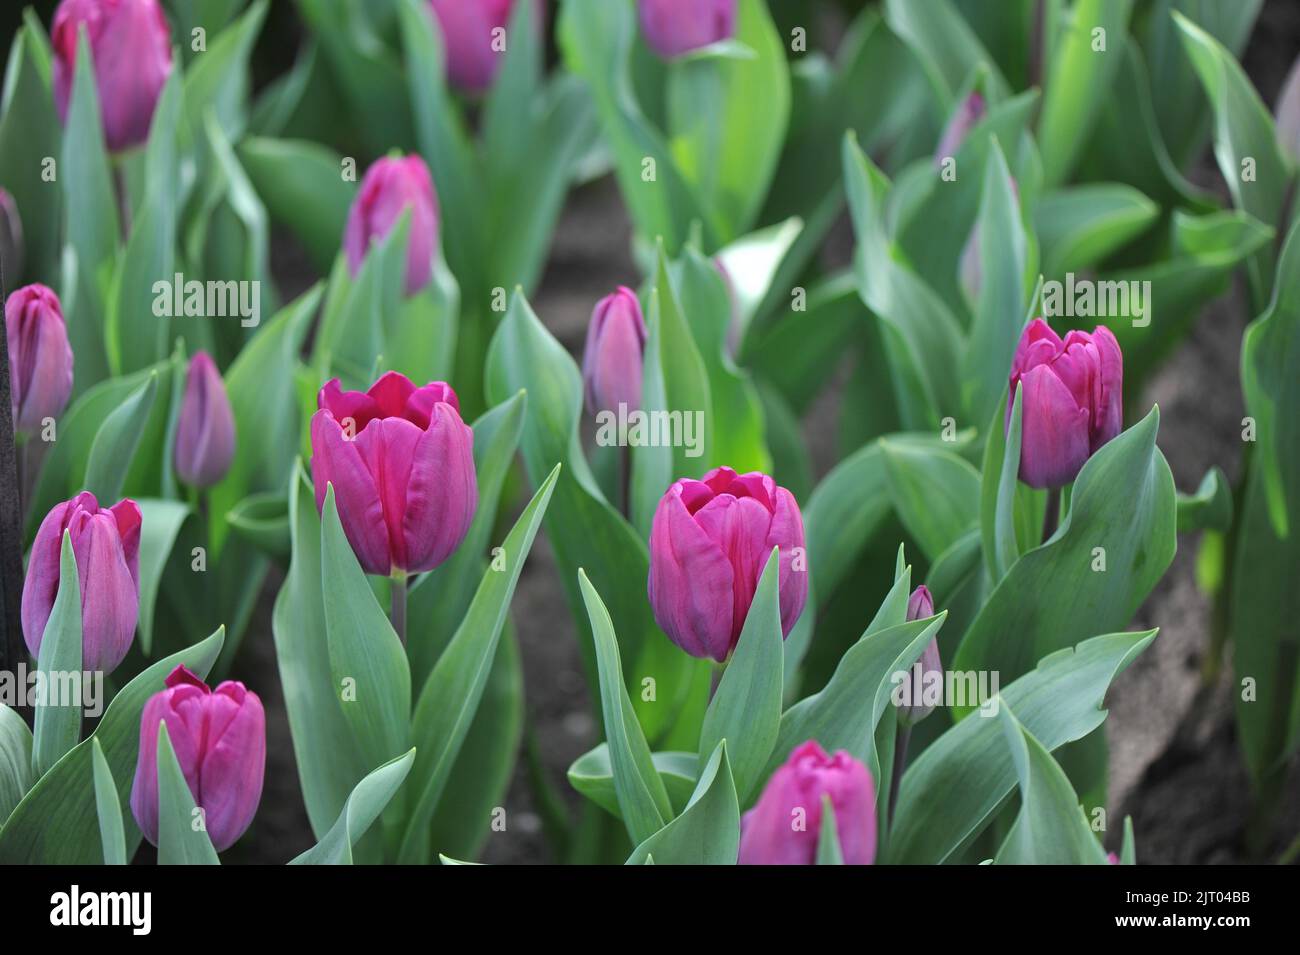 Triumph tulips (Tulipa) Purple Star bloom in a garden in April Stock Photo